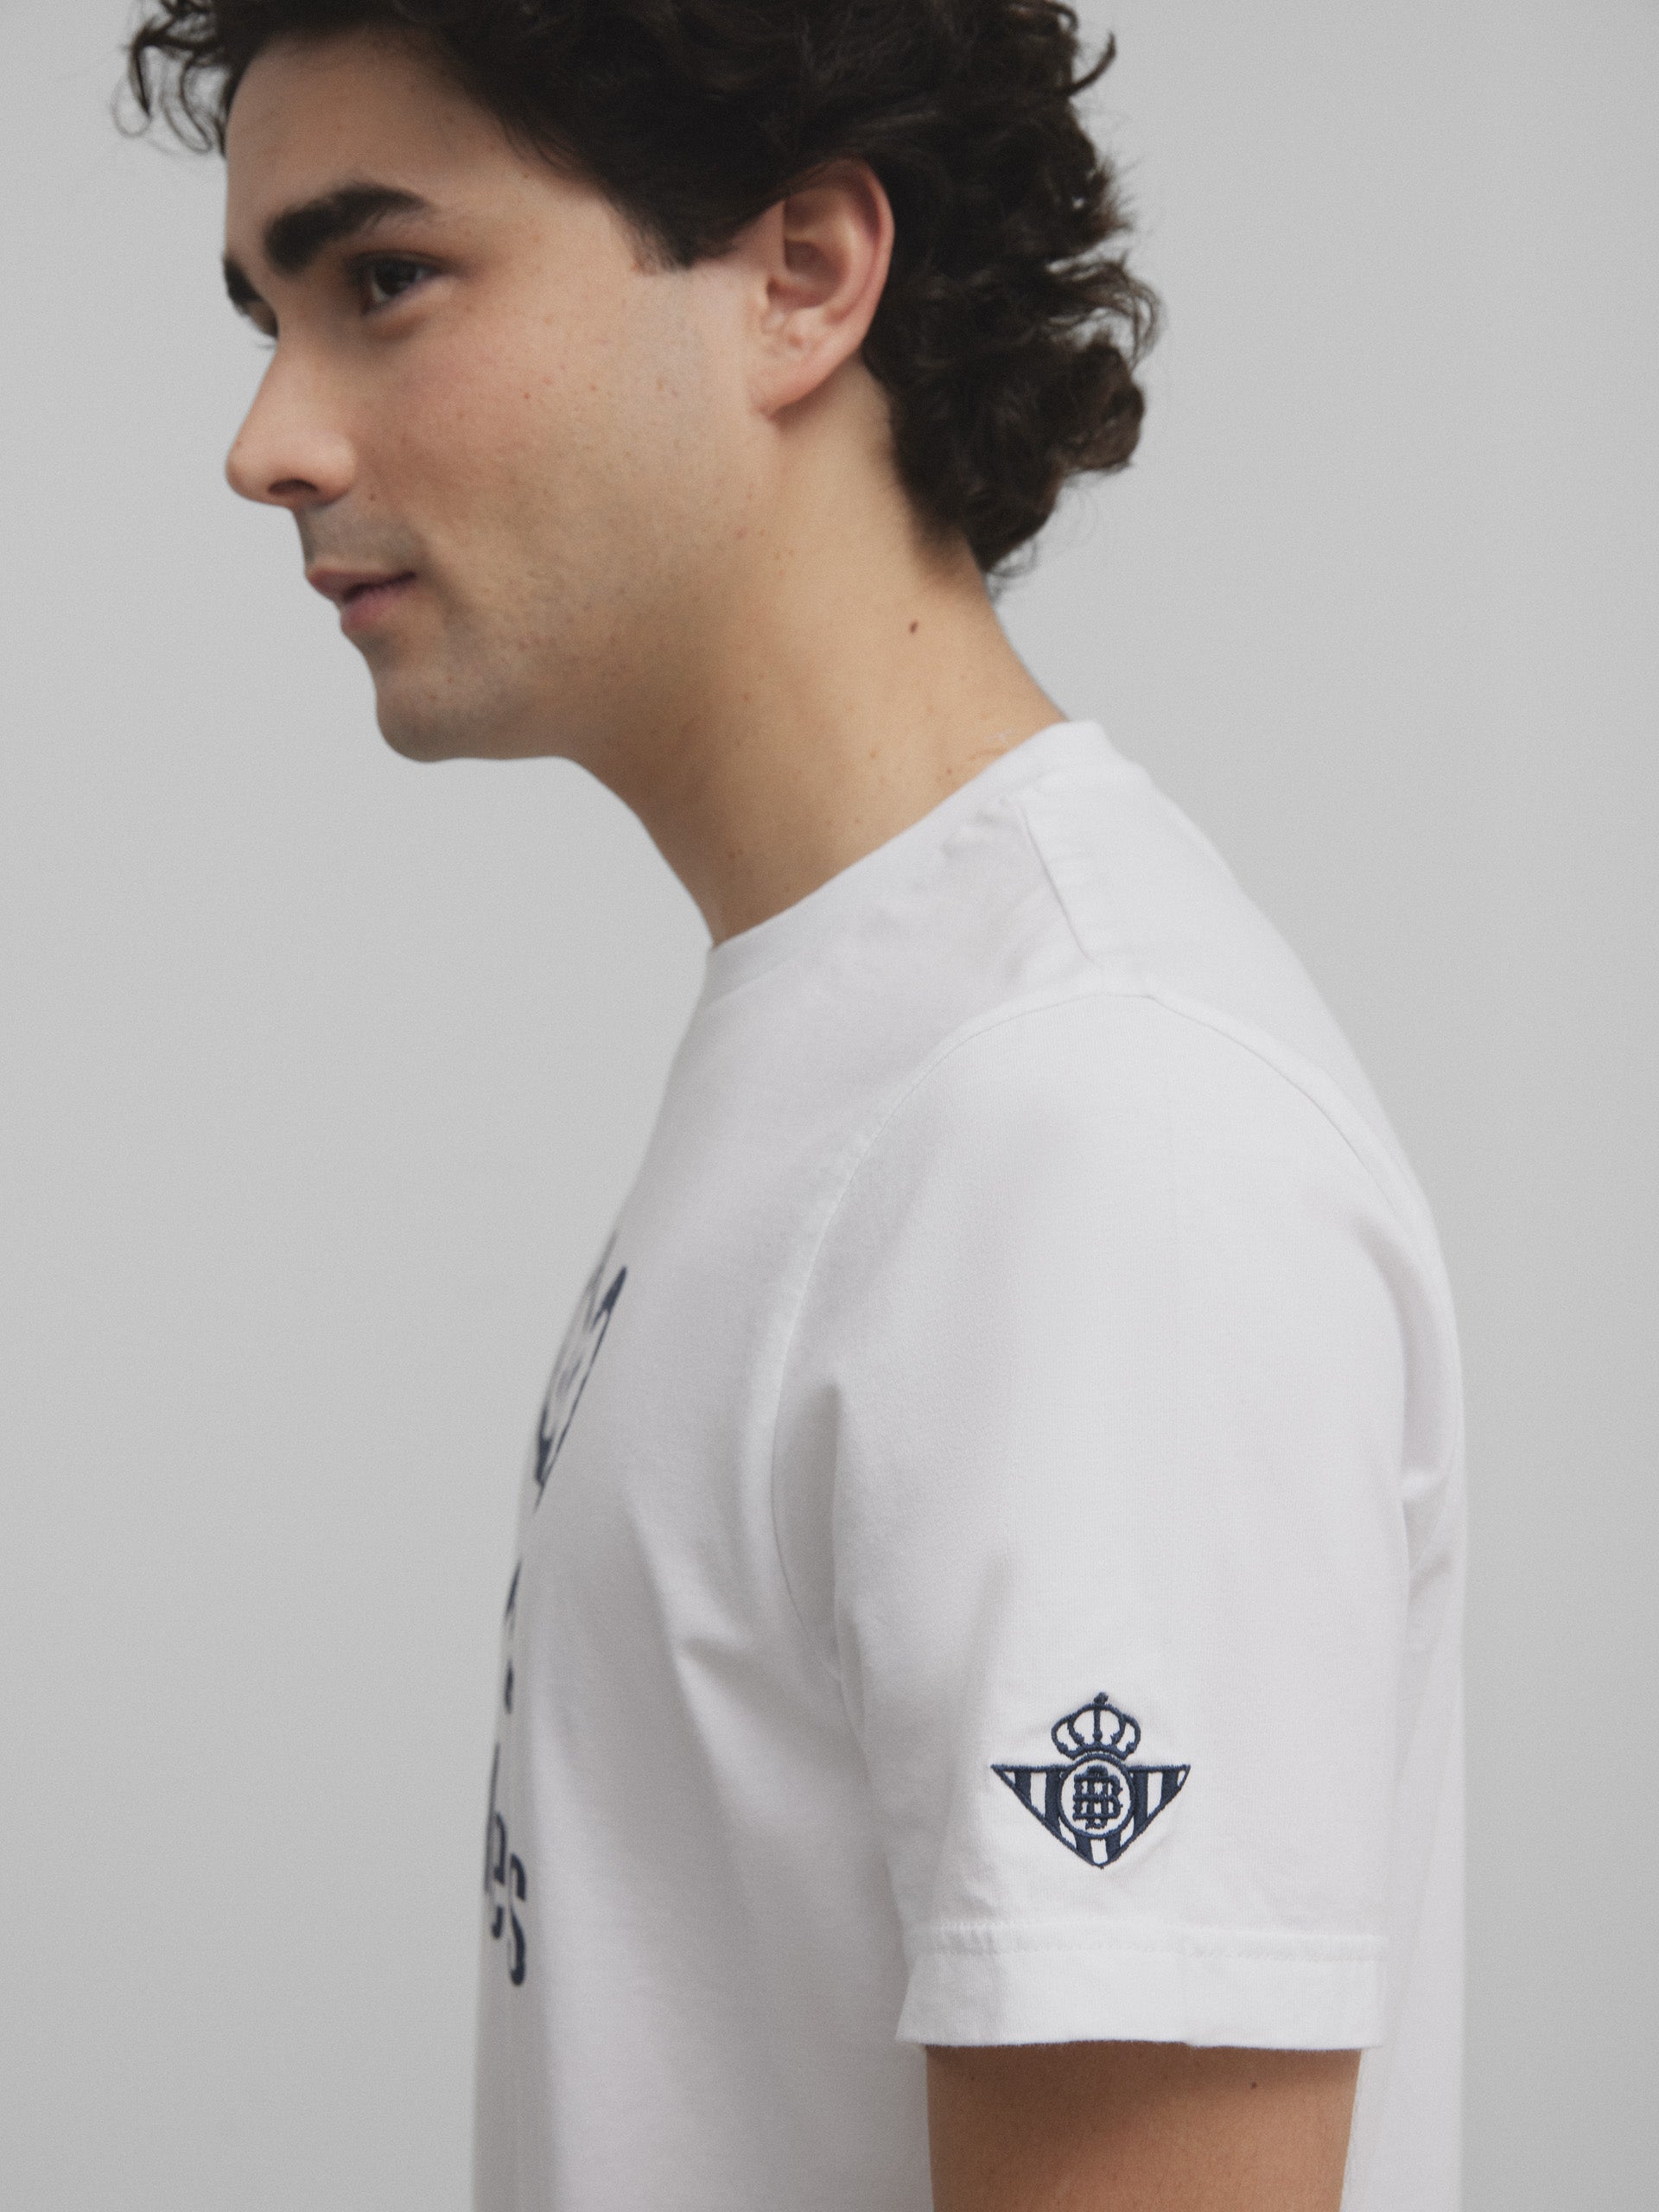 Real Betis white racket t-shirt